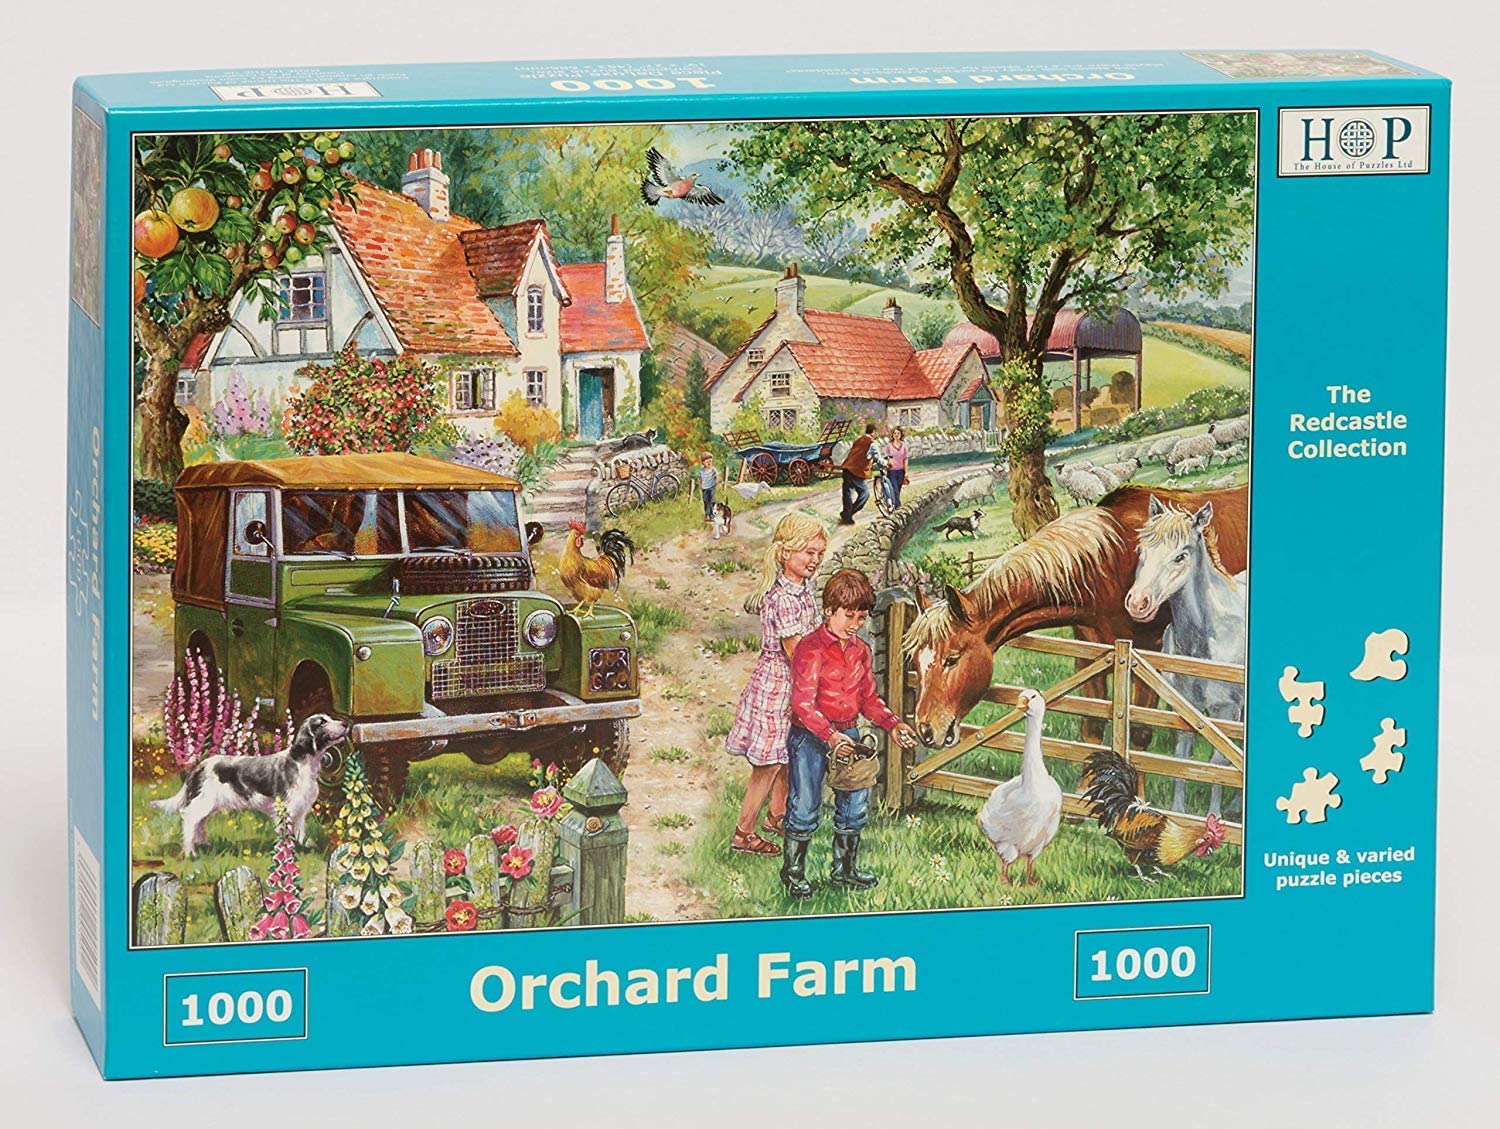 HOP 1000 Piece Jigsaw - Orchard Farm